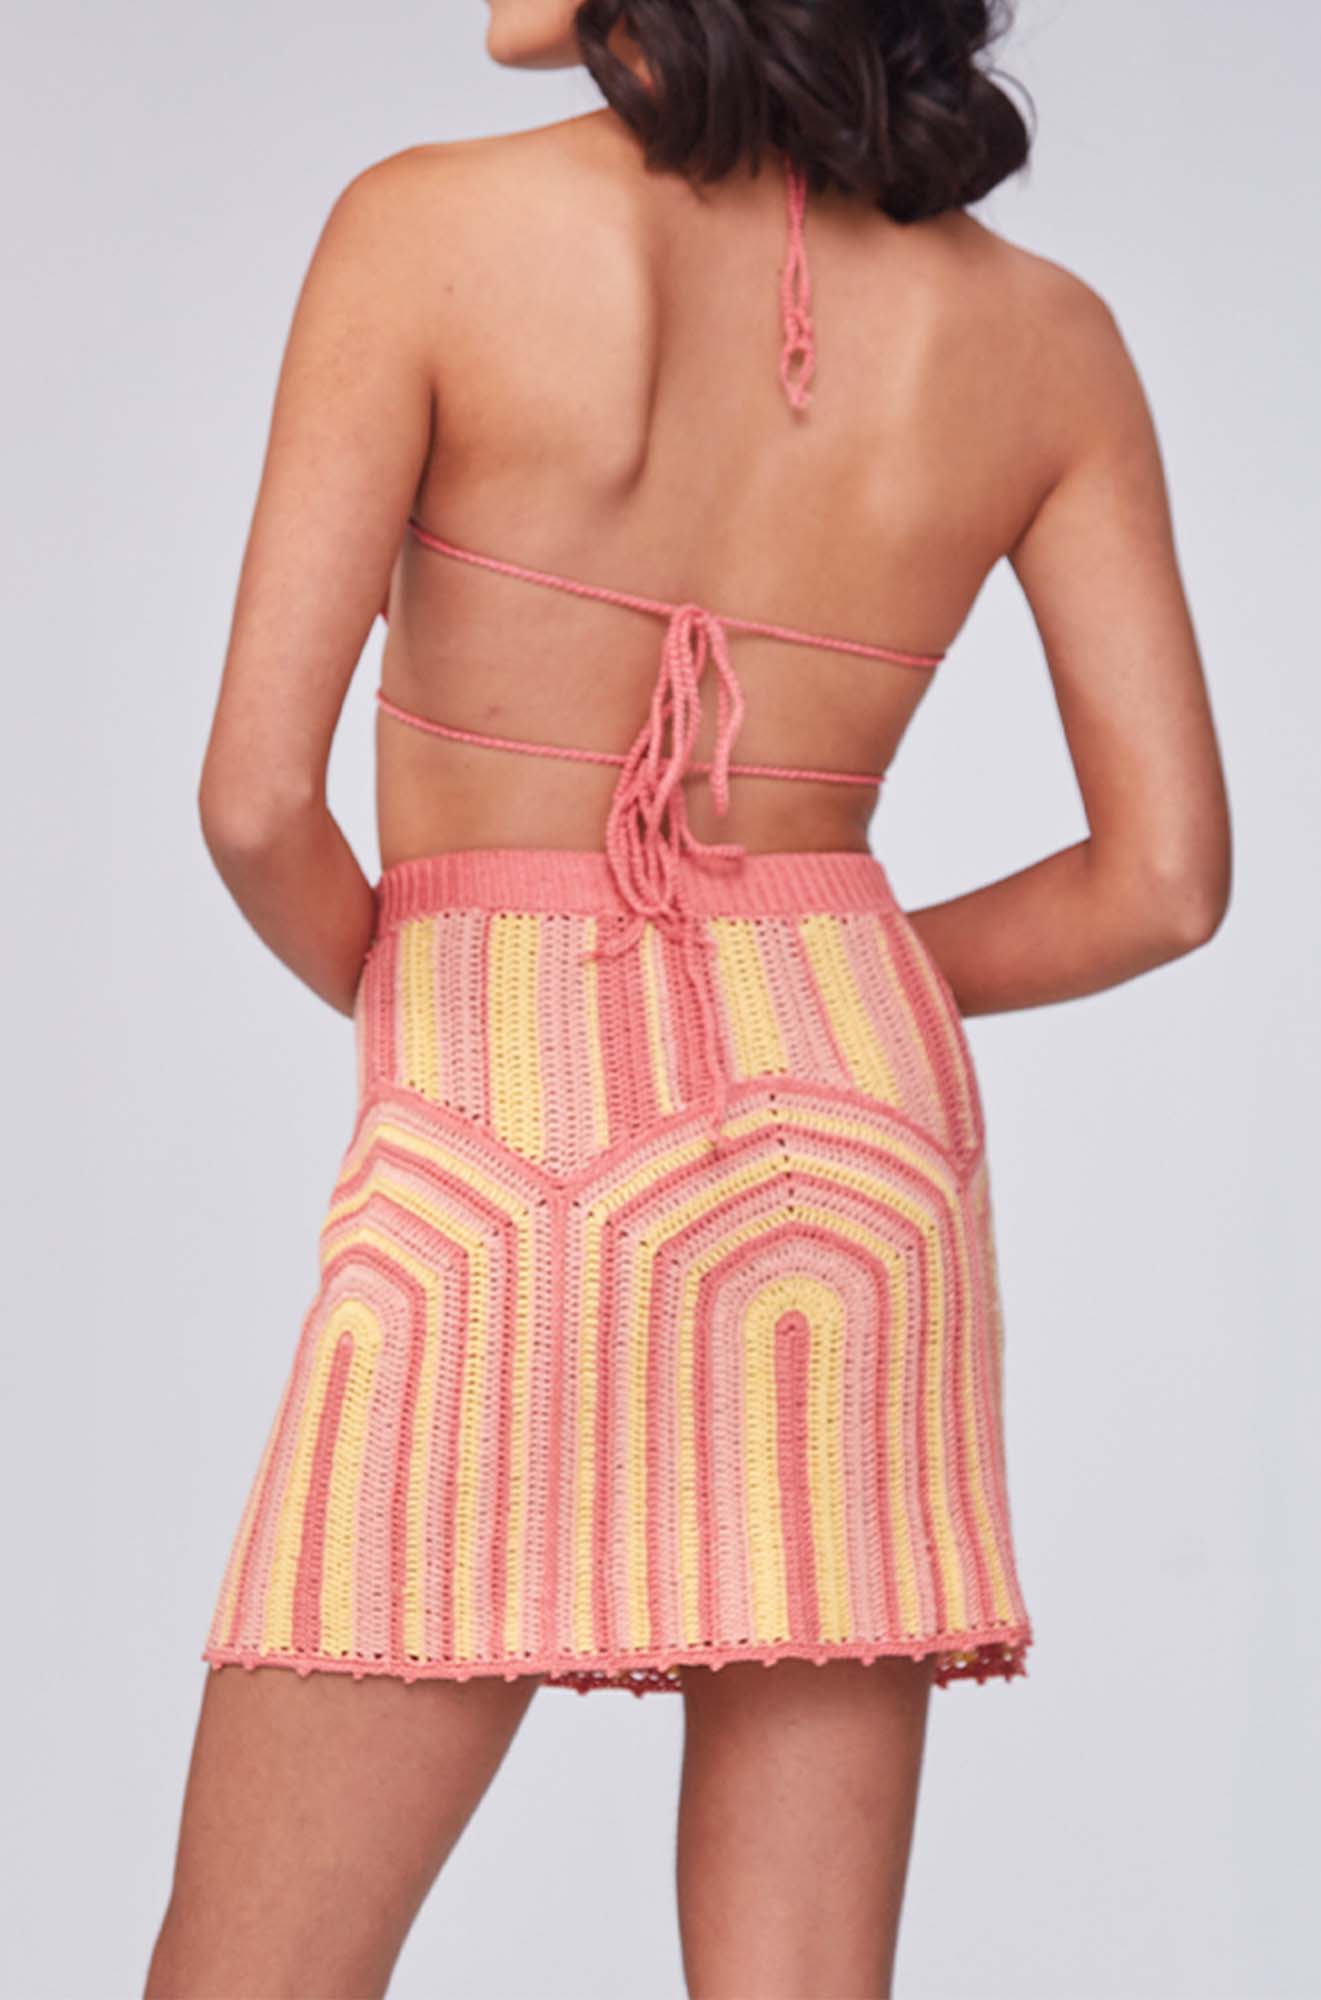 Hannah Crochet Skirt